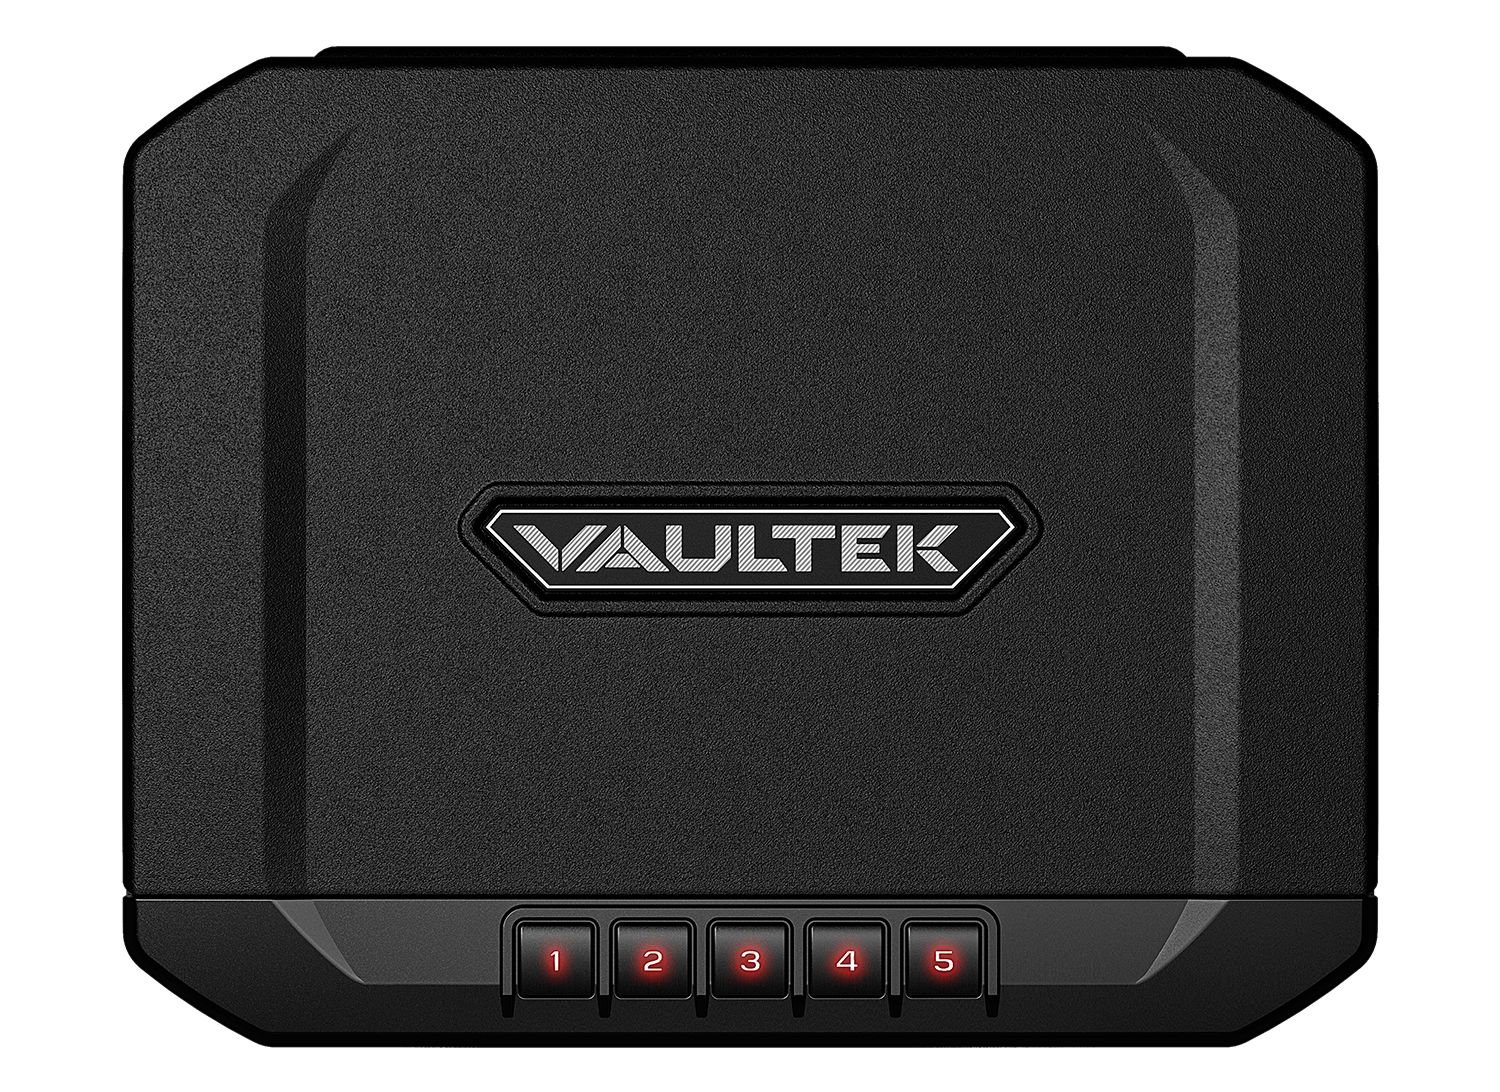 VAULTEK 10 Series Essential (Covert Black) KYGUNCO